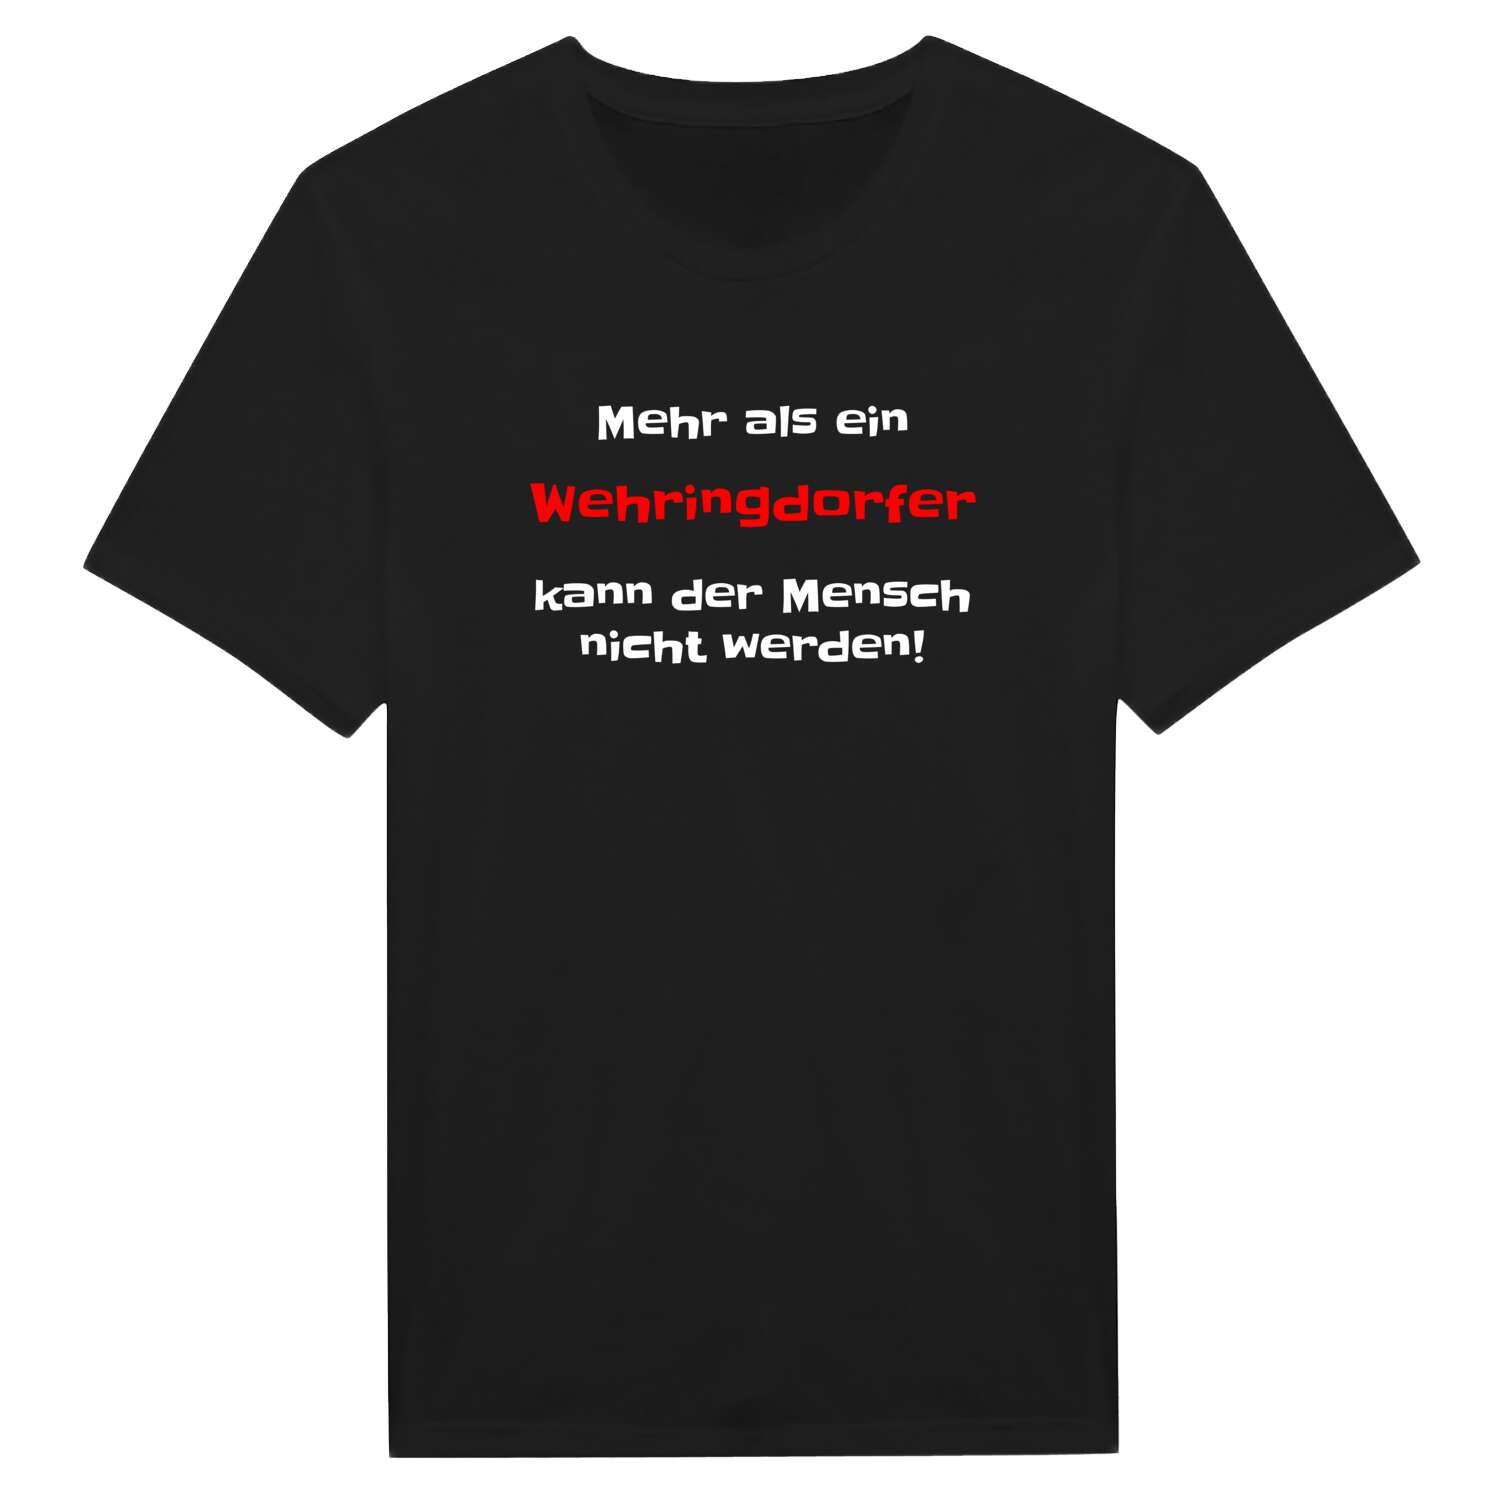 Wehringdorf T-Shirt »Mehr als ein«